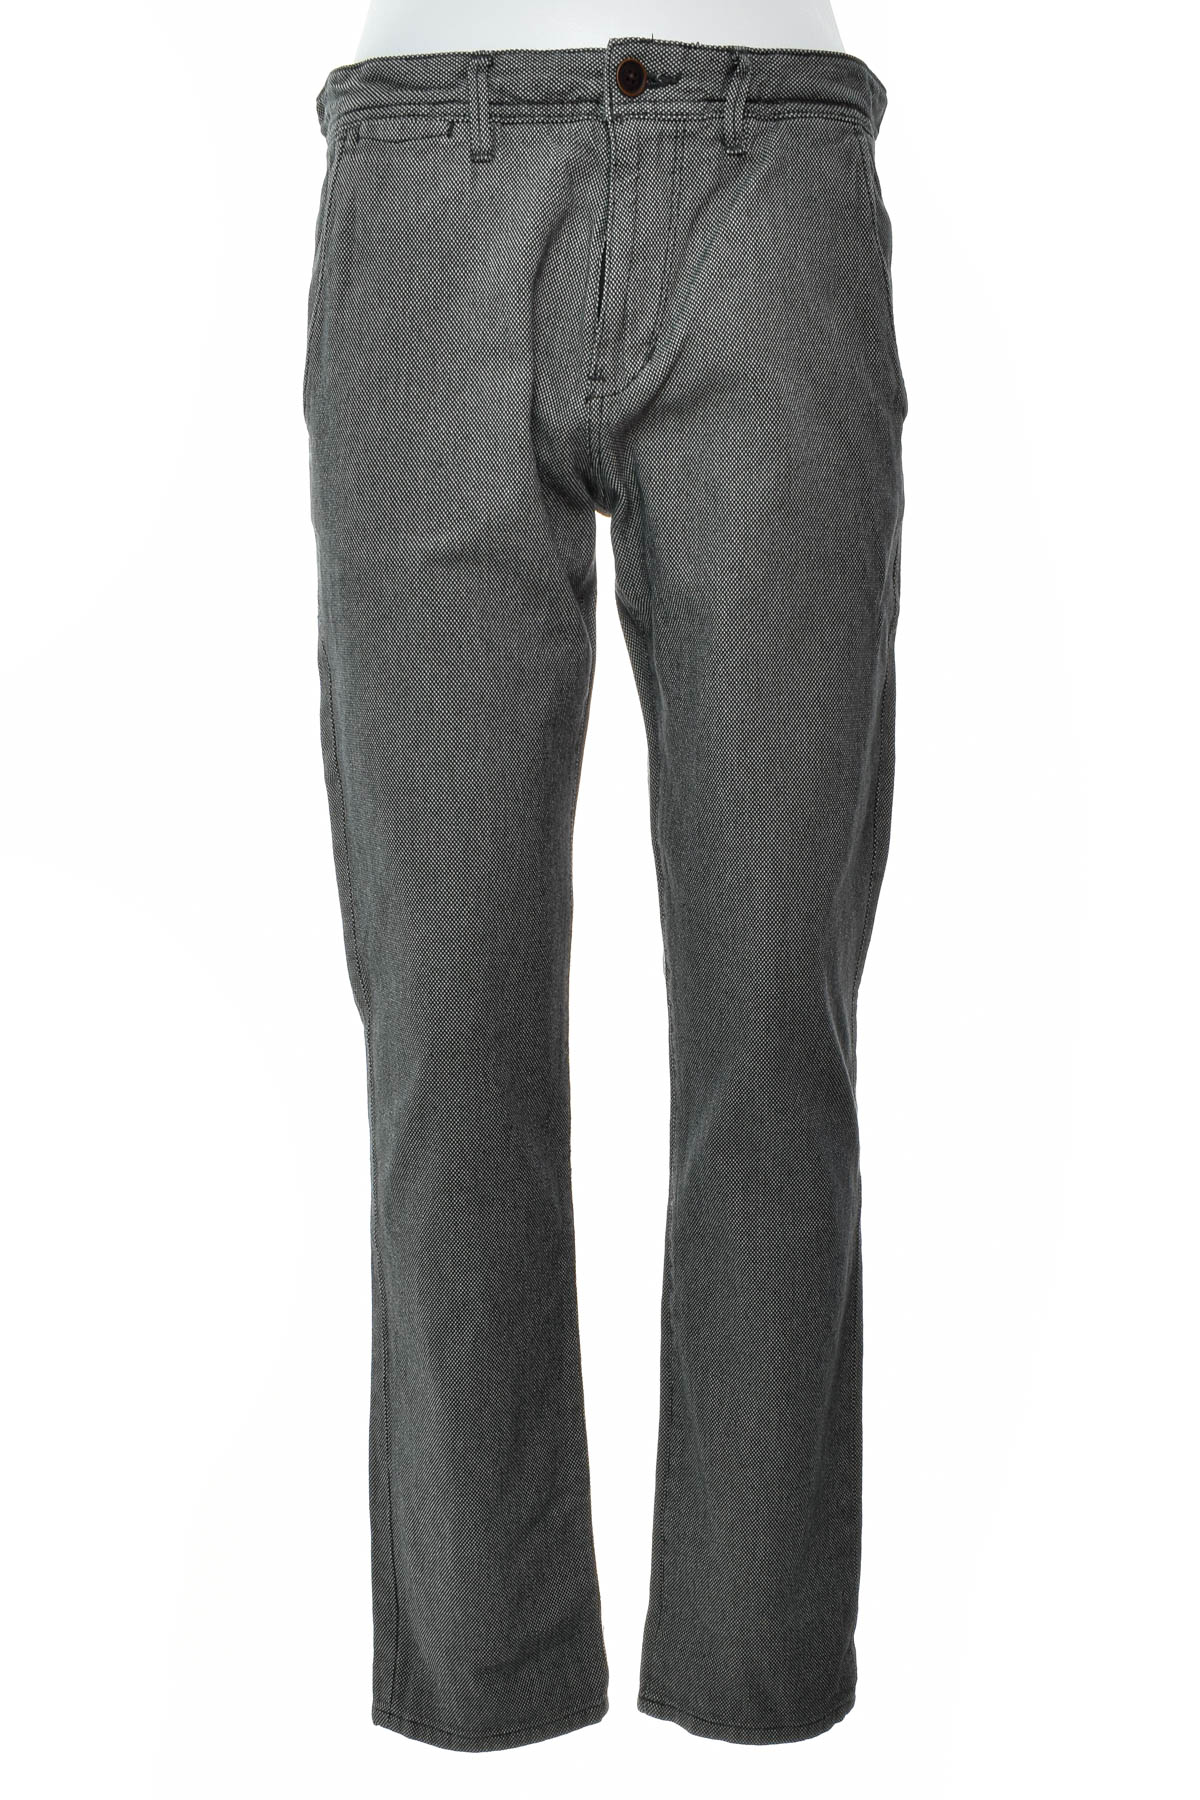 Men's trousers - TOM TAILOR Denim - 0